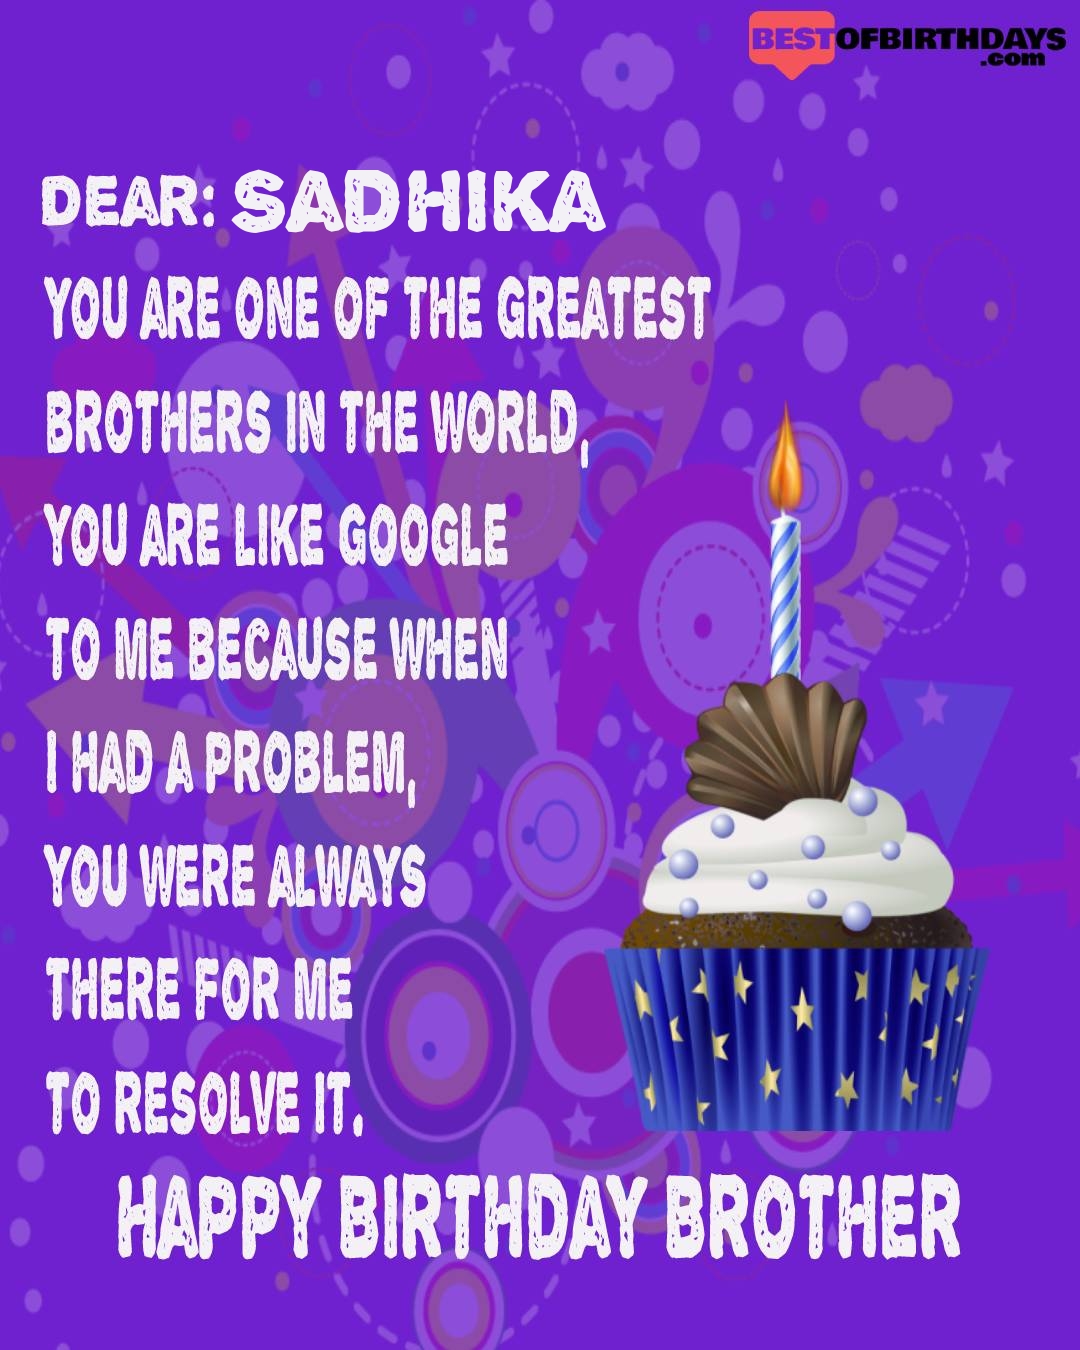 Happy birthday sadhika bhai brother bro